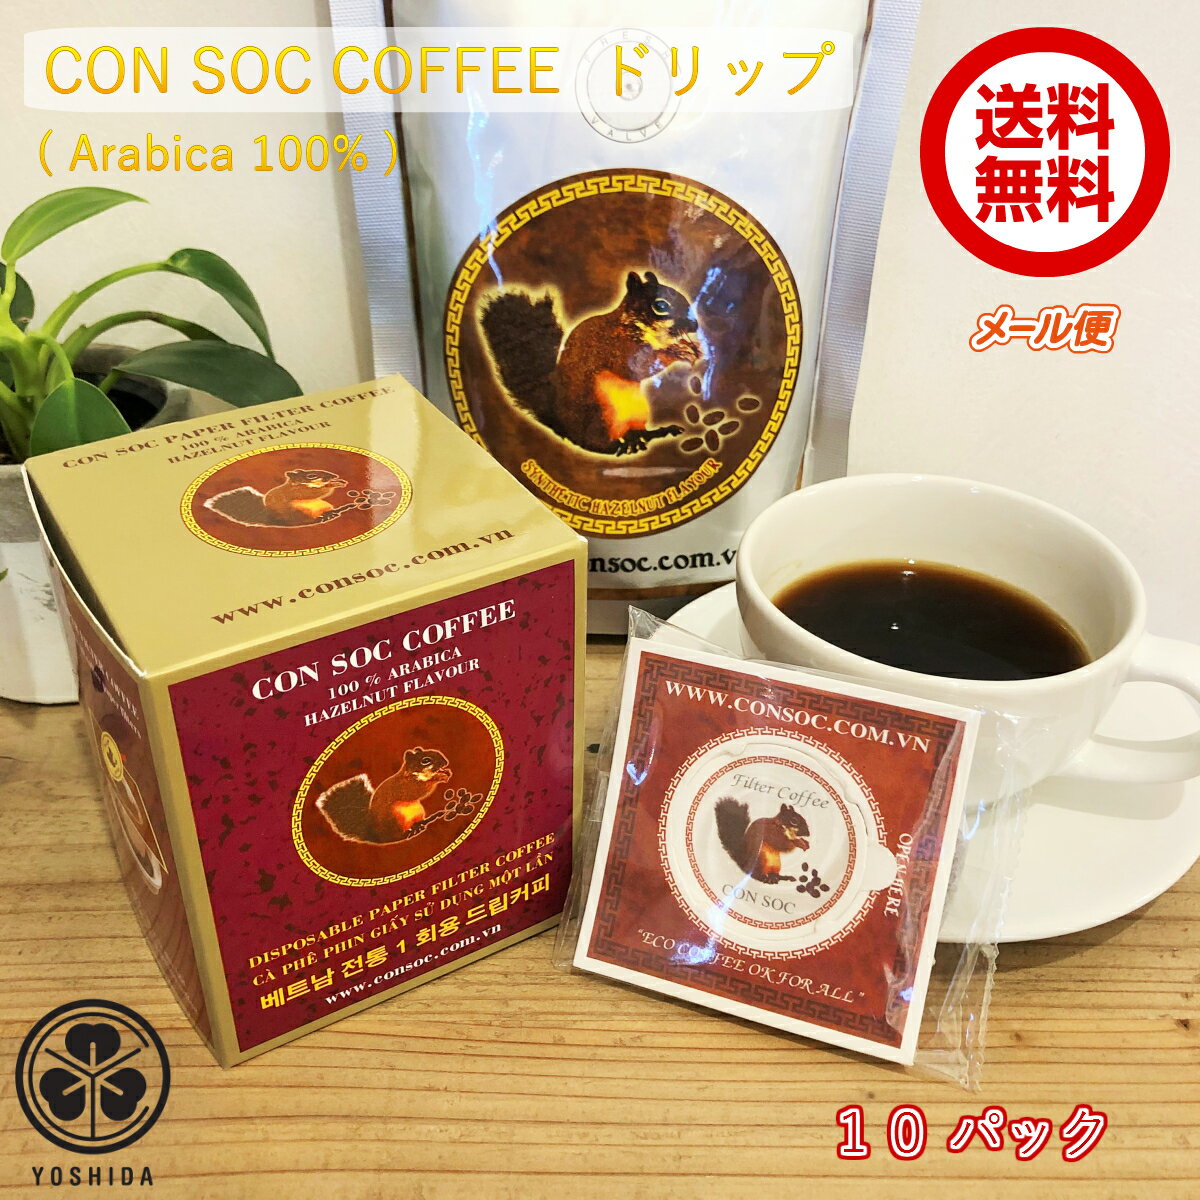 ベトナムコーヒー CONSOC COFFEE アラビカ 中挽き ペーパーフィルタードリップ (7gx10袋) ヘーゼルナッツフレーバー Arabica 100% レギュラーコーヒー ドリップバッグタイプ (メール便)